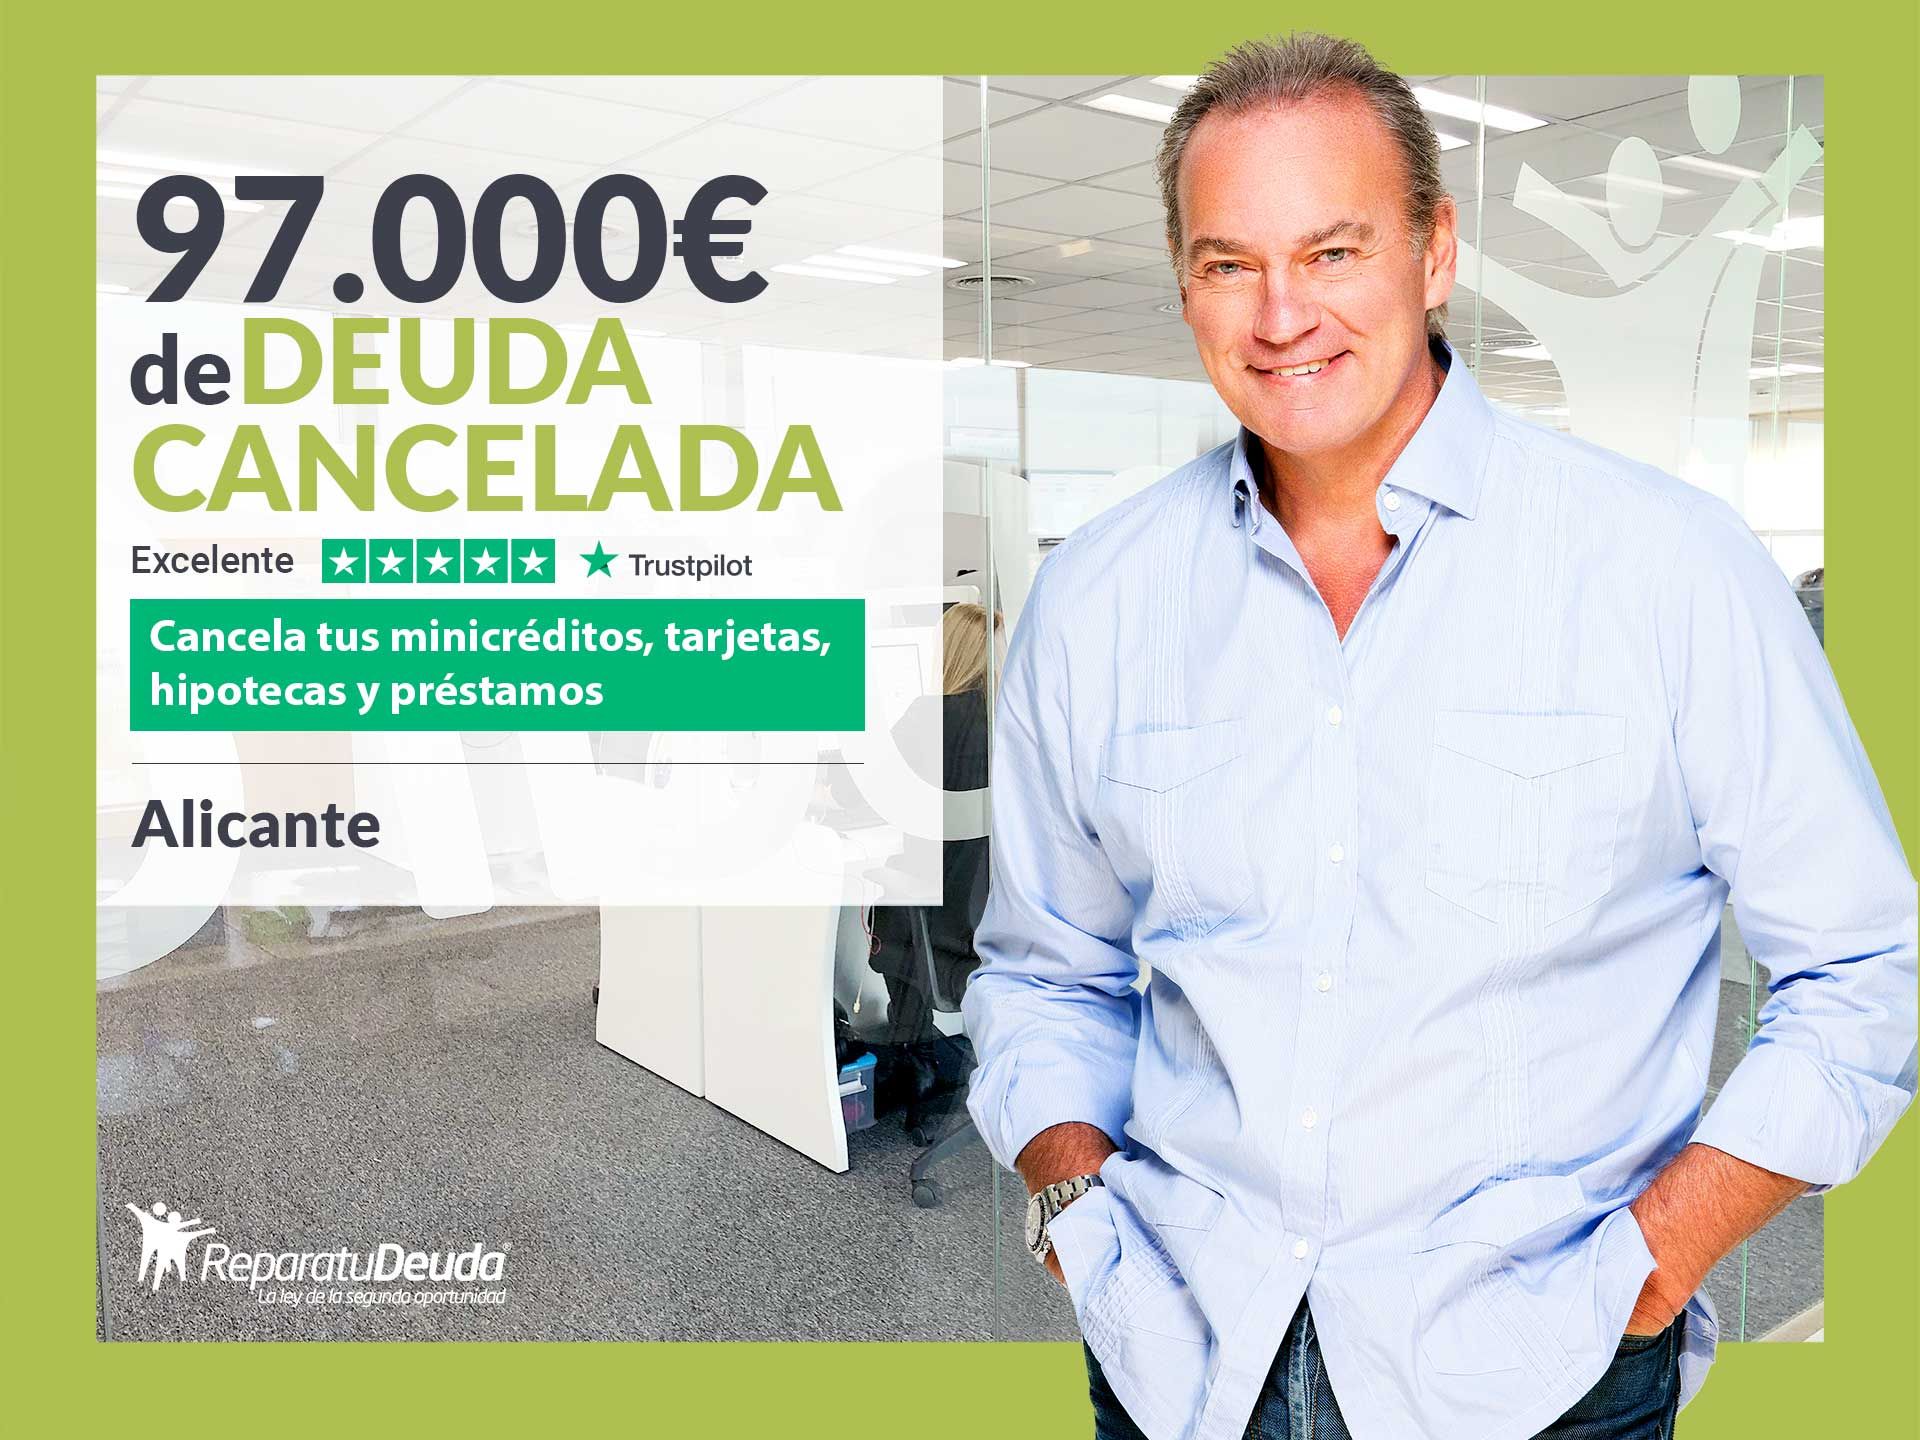 Repara tu Deuda Abogados cancela 97.000? en Alicante (C. Valenciana) con la Ley de Segunda Oportunidad